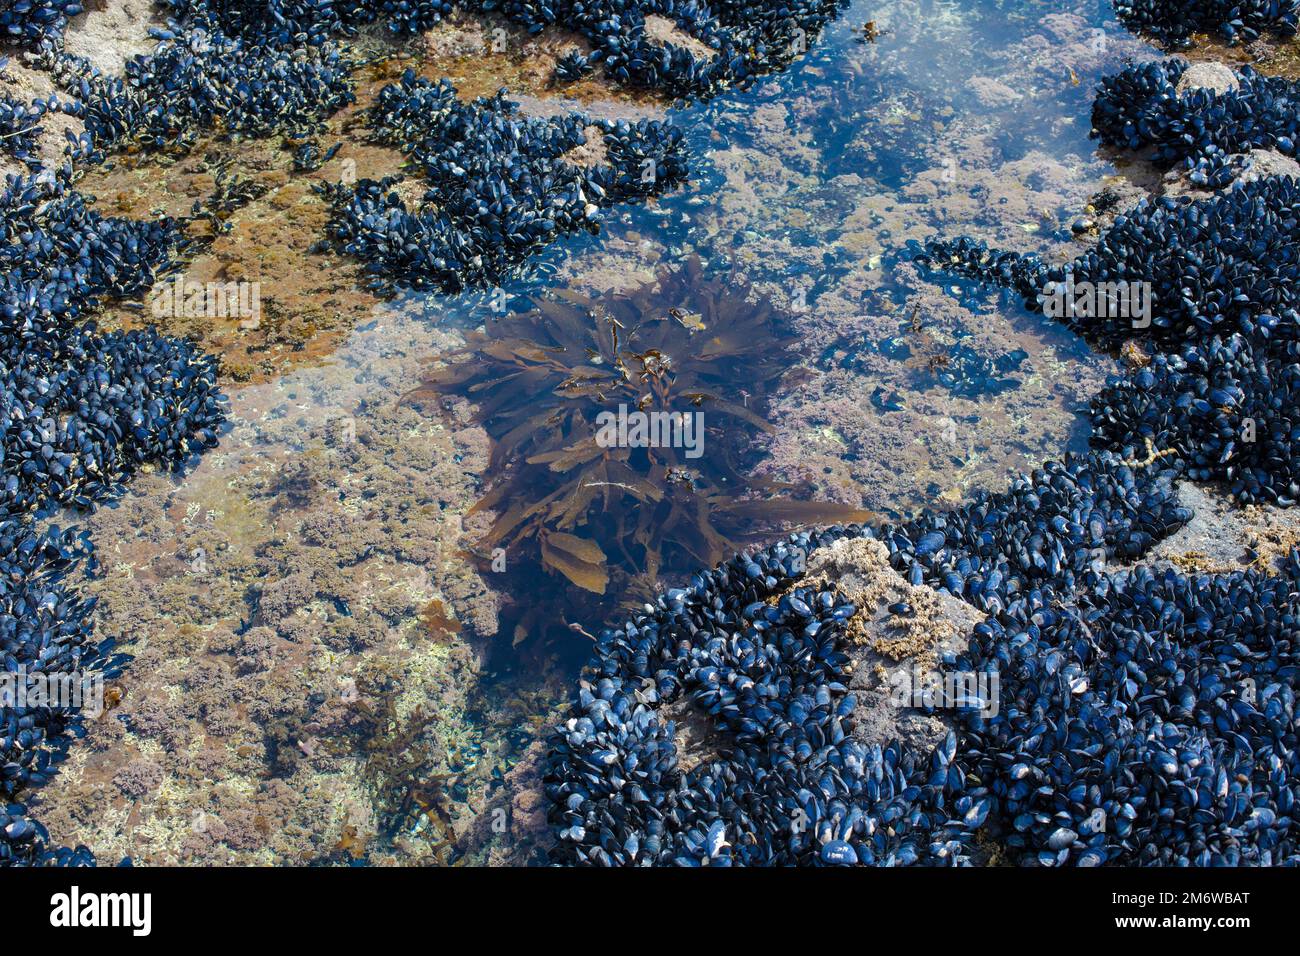 Un regard sur la vie en Nouvelle-Zélande : fruits de mer abondants, algues comestibles et coquillages sur une côte rocheuse. Banque D'Images